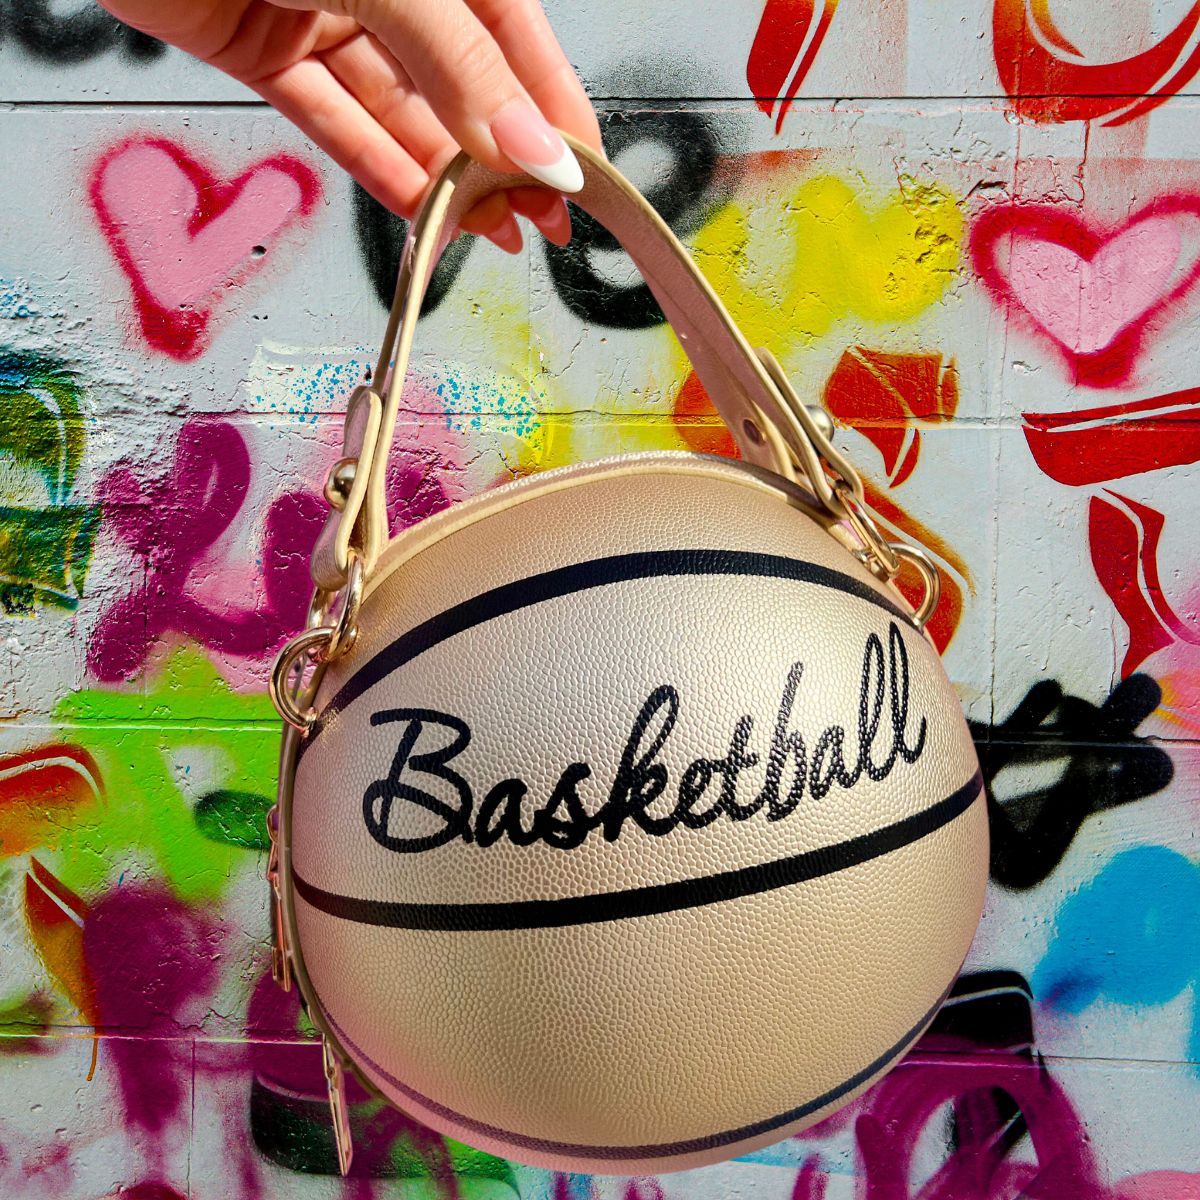 Clutch Gold Basketball Bag for Women